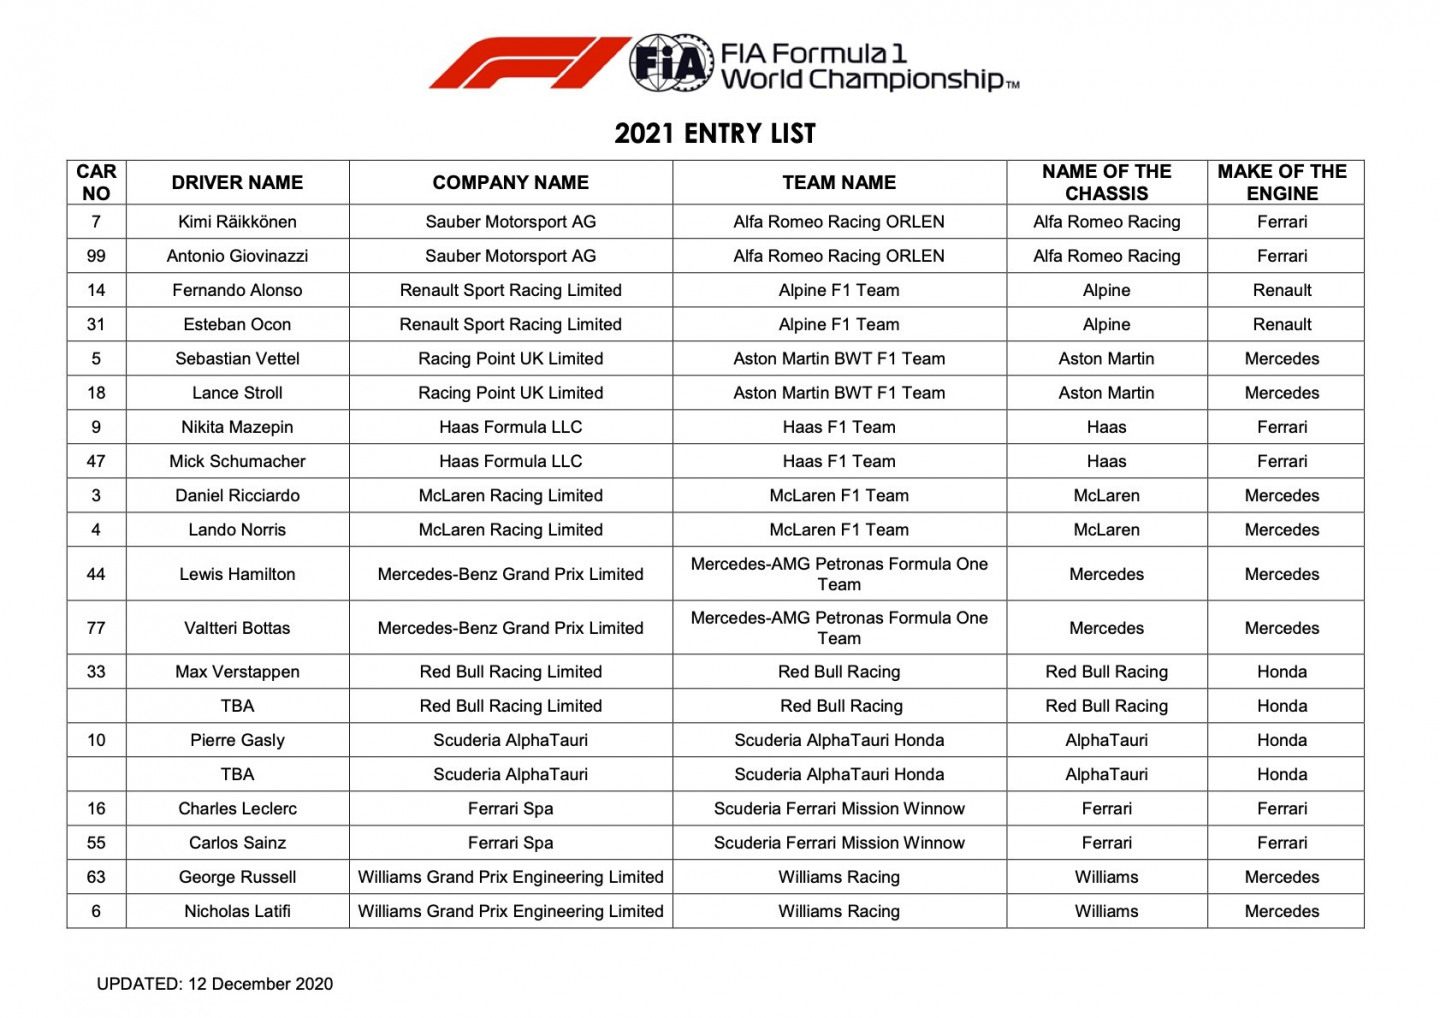 Заявочный лист на сезон Формулы 1 2021 года © FIA